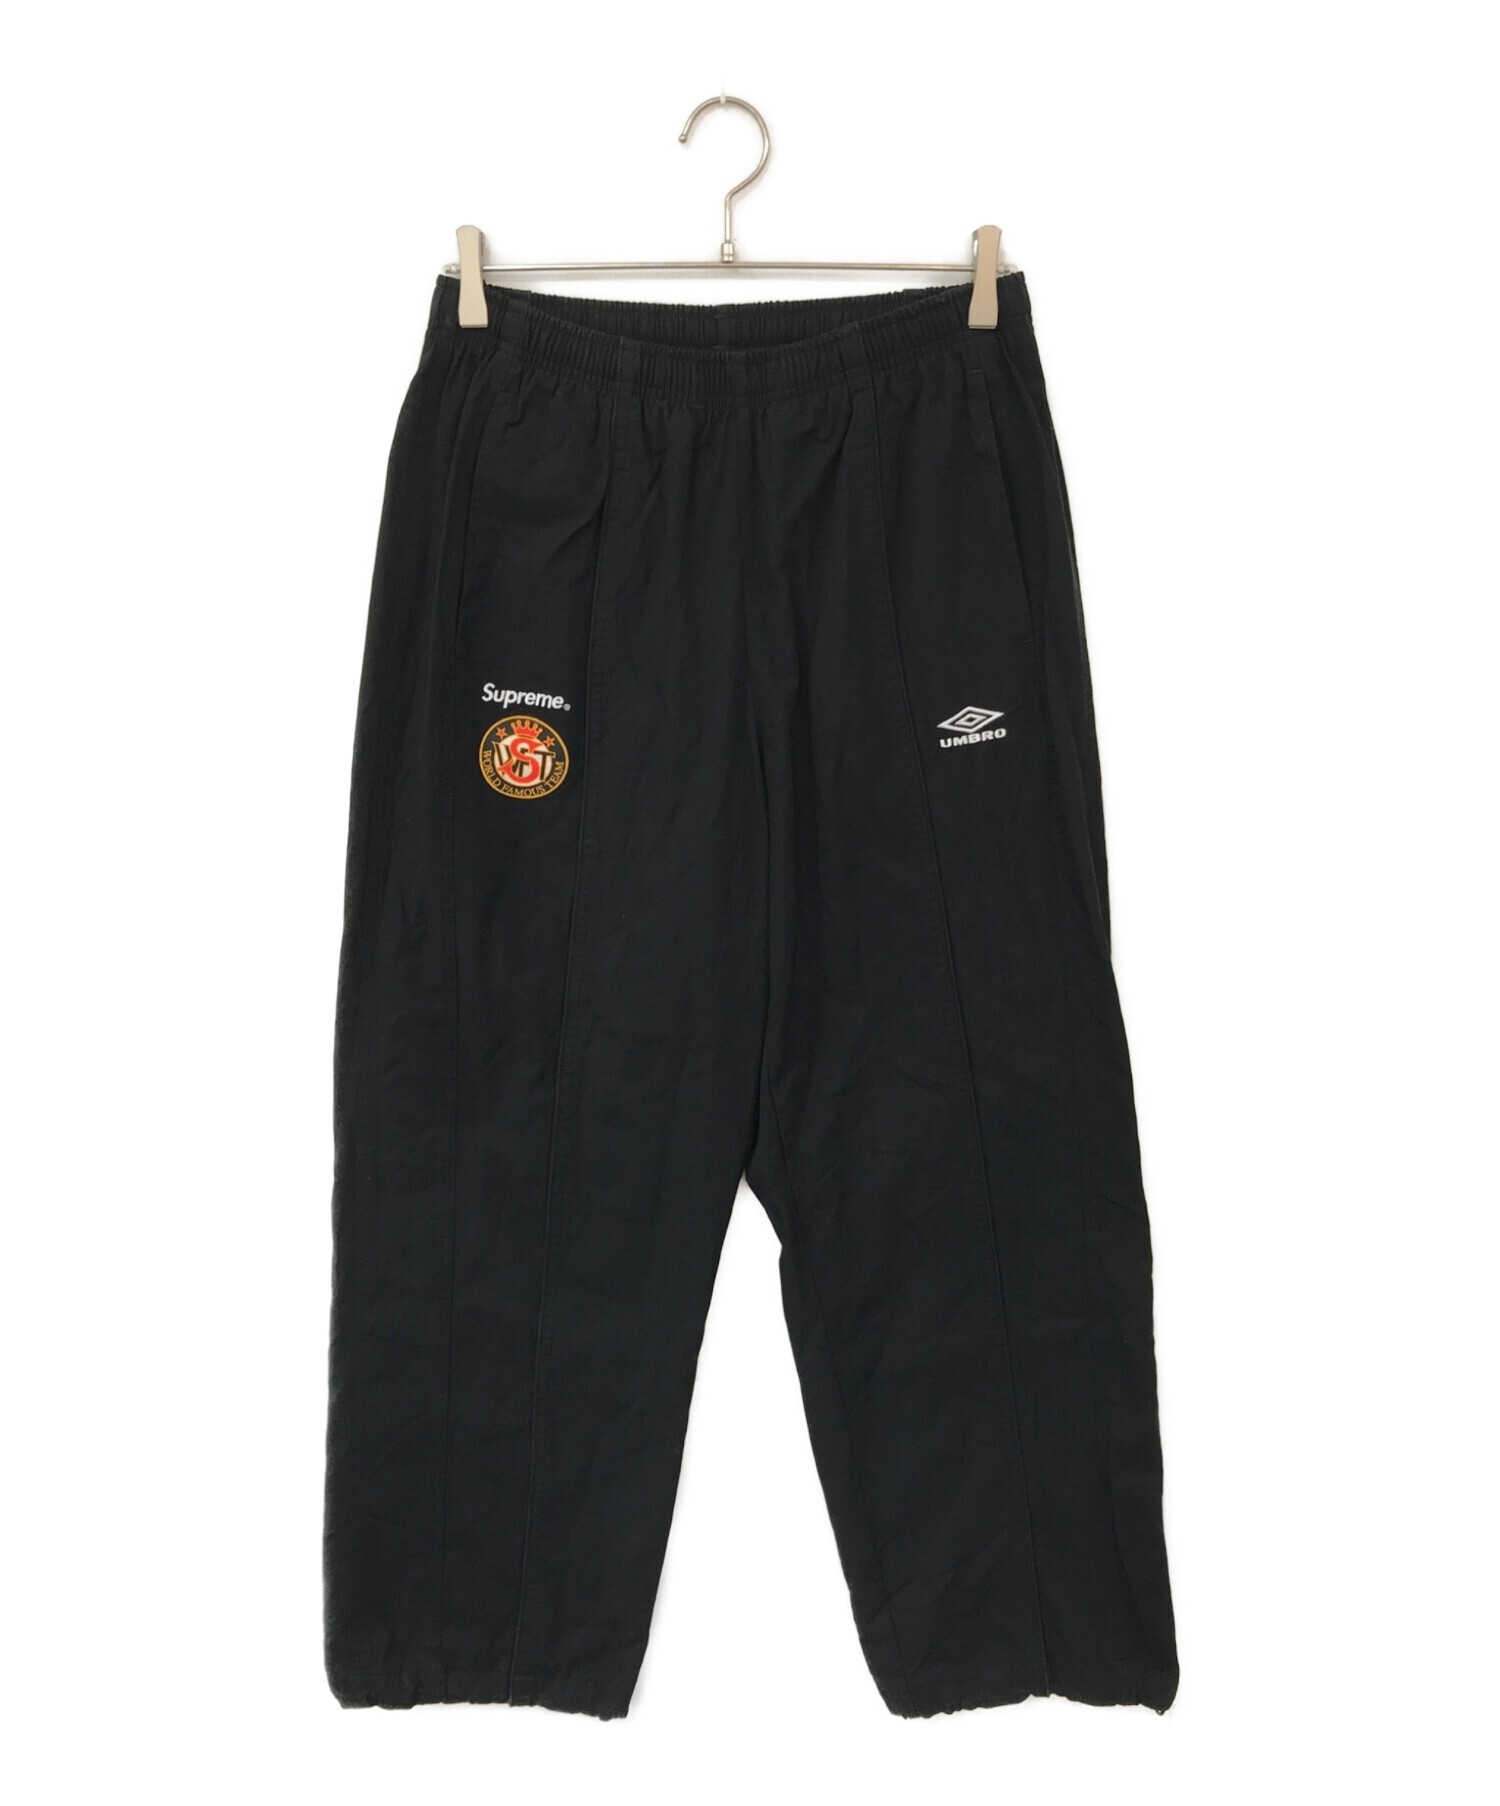 Supreme (シュプリーム) UMBRO (アンブロ) Cotton Ripstop Track pants ブラック サイズ:ASIA M